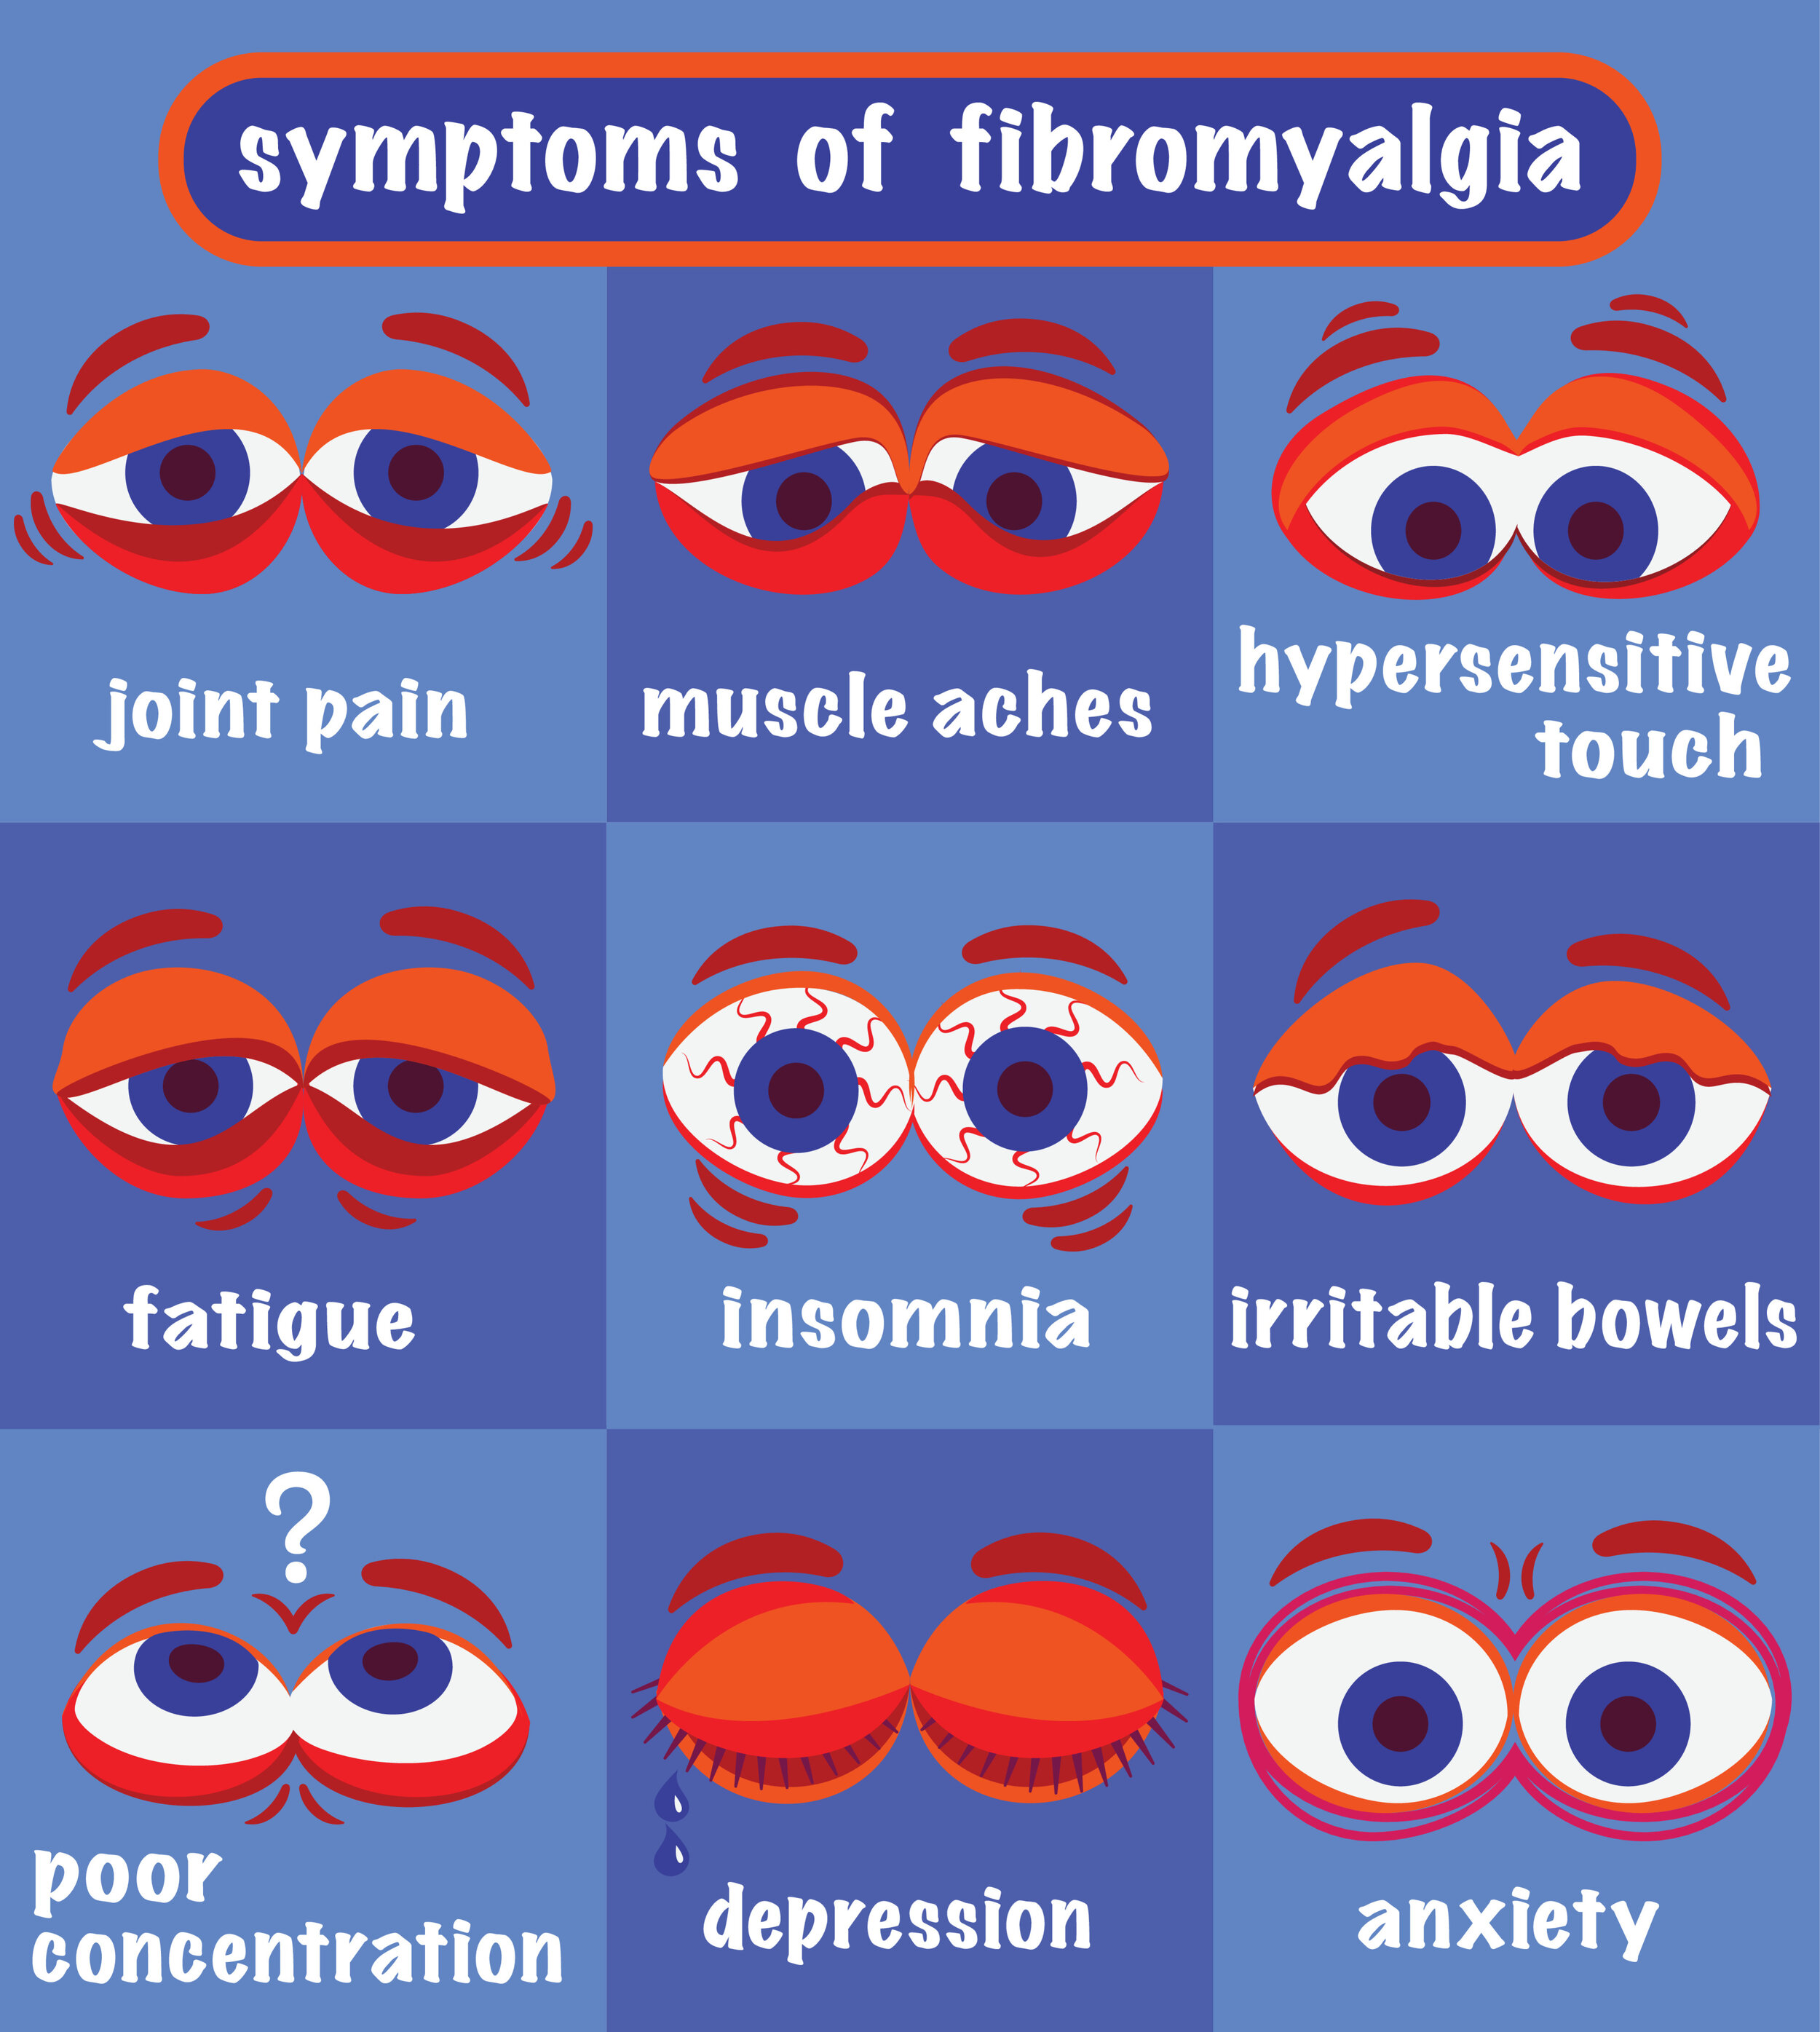 about fibromyalgia